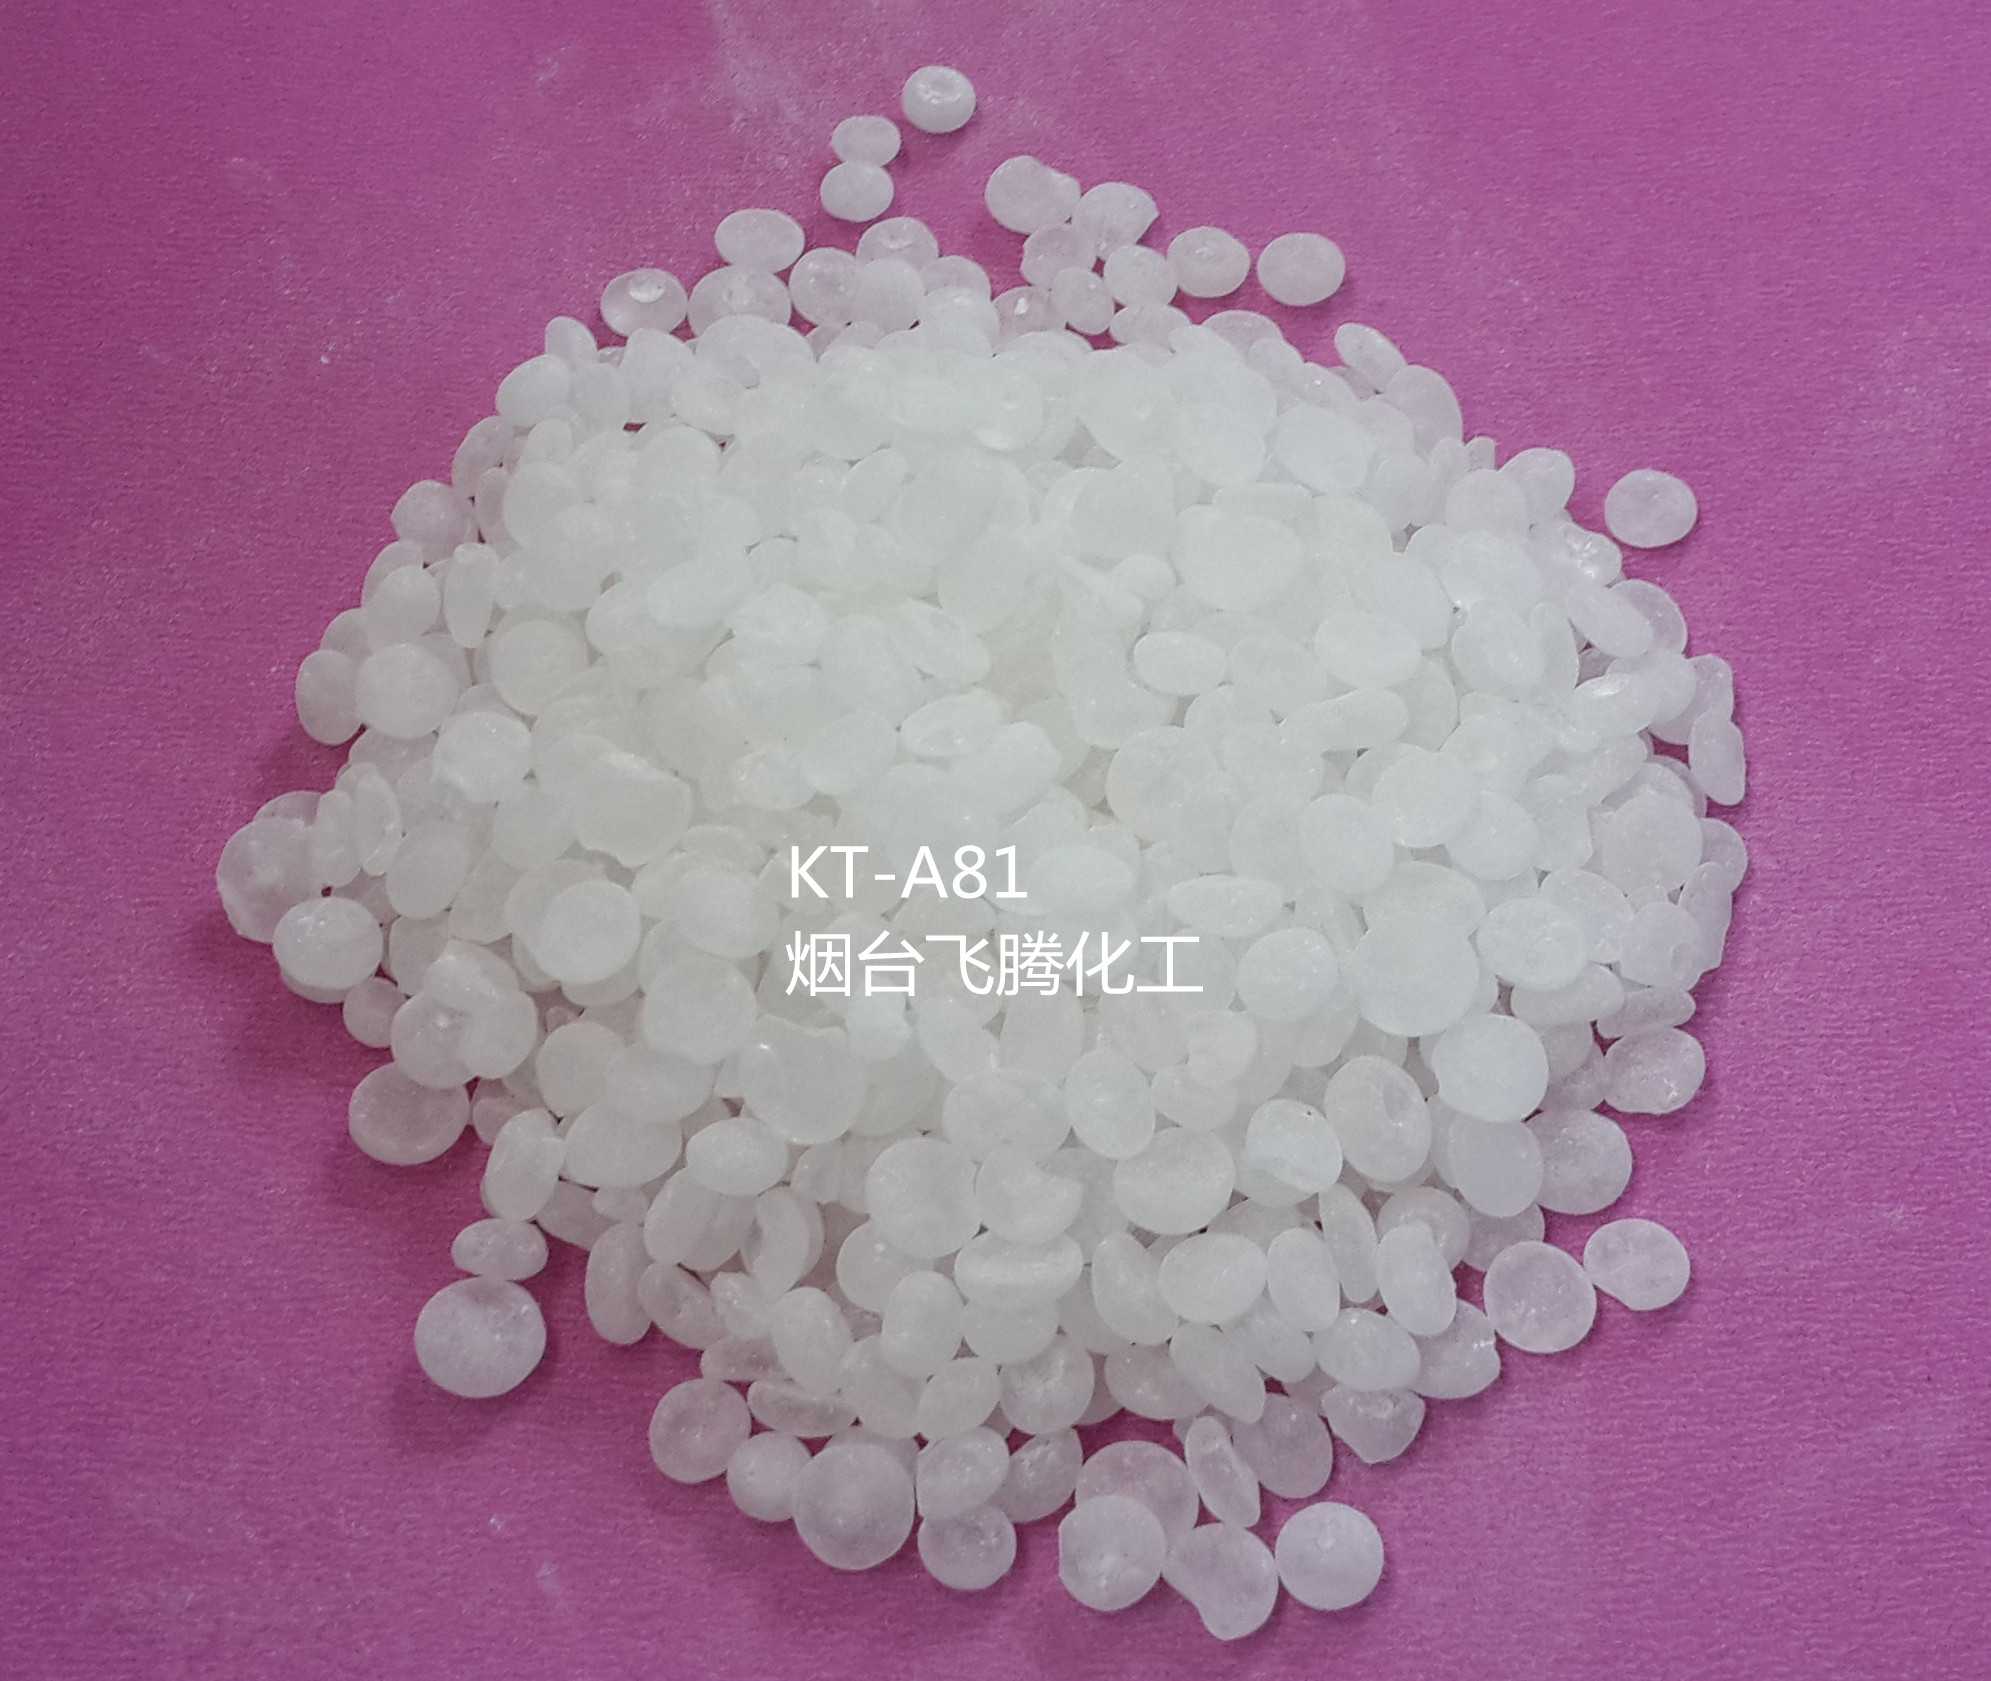 醛树脂KT-A81,100,耐黄变耐候树脂,免费供样!